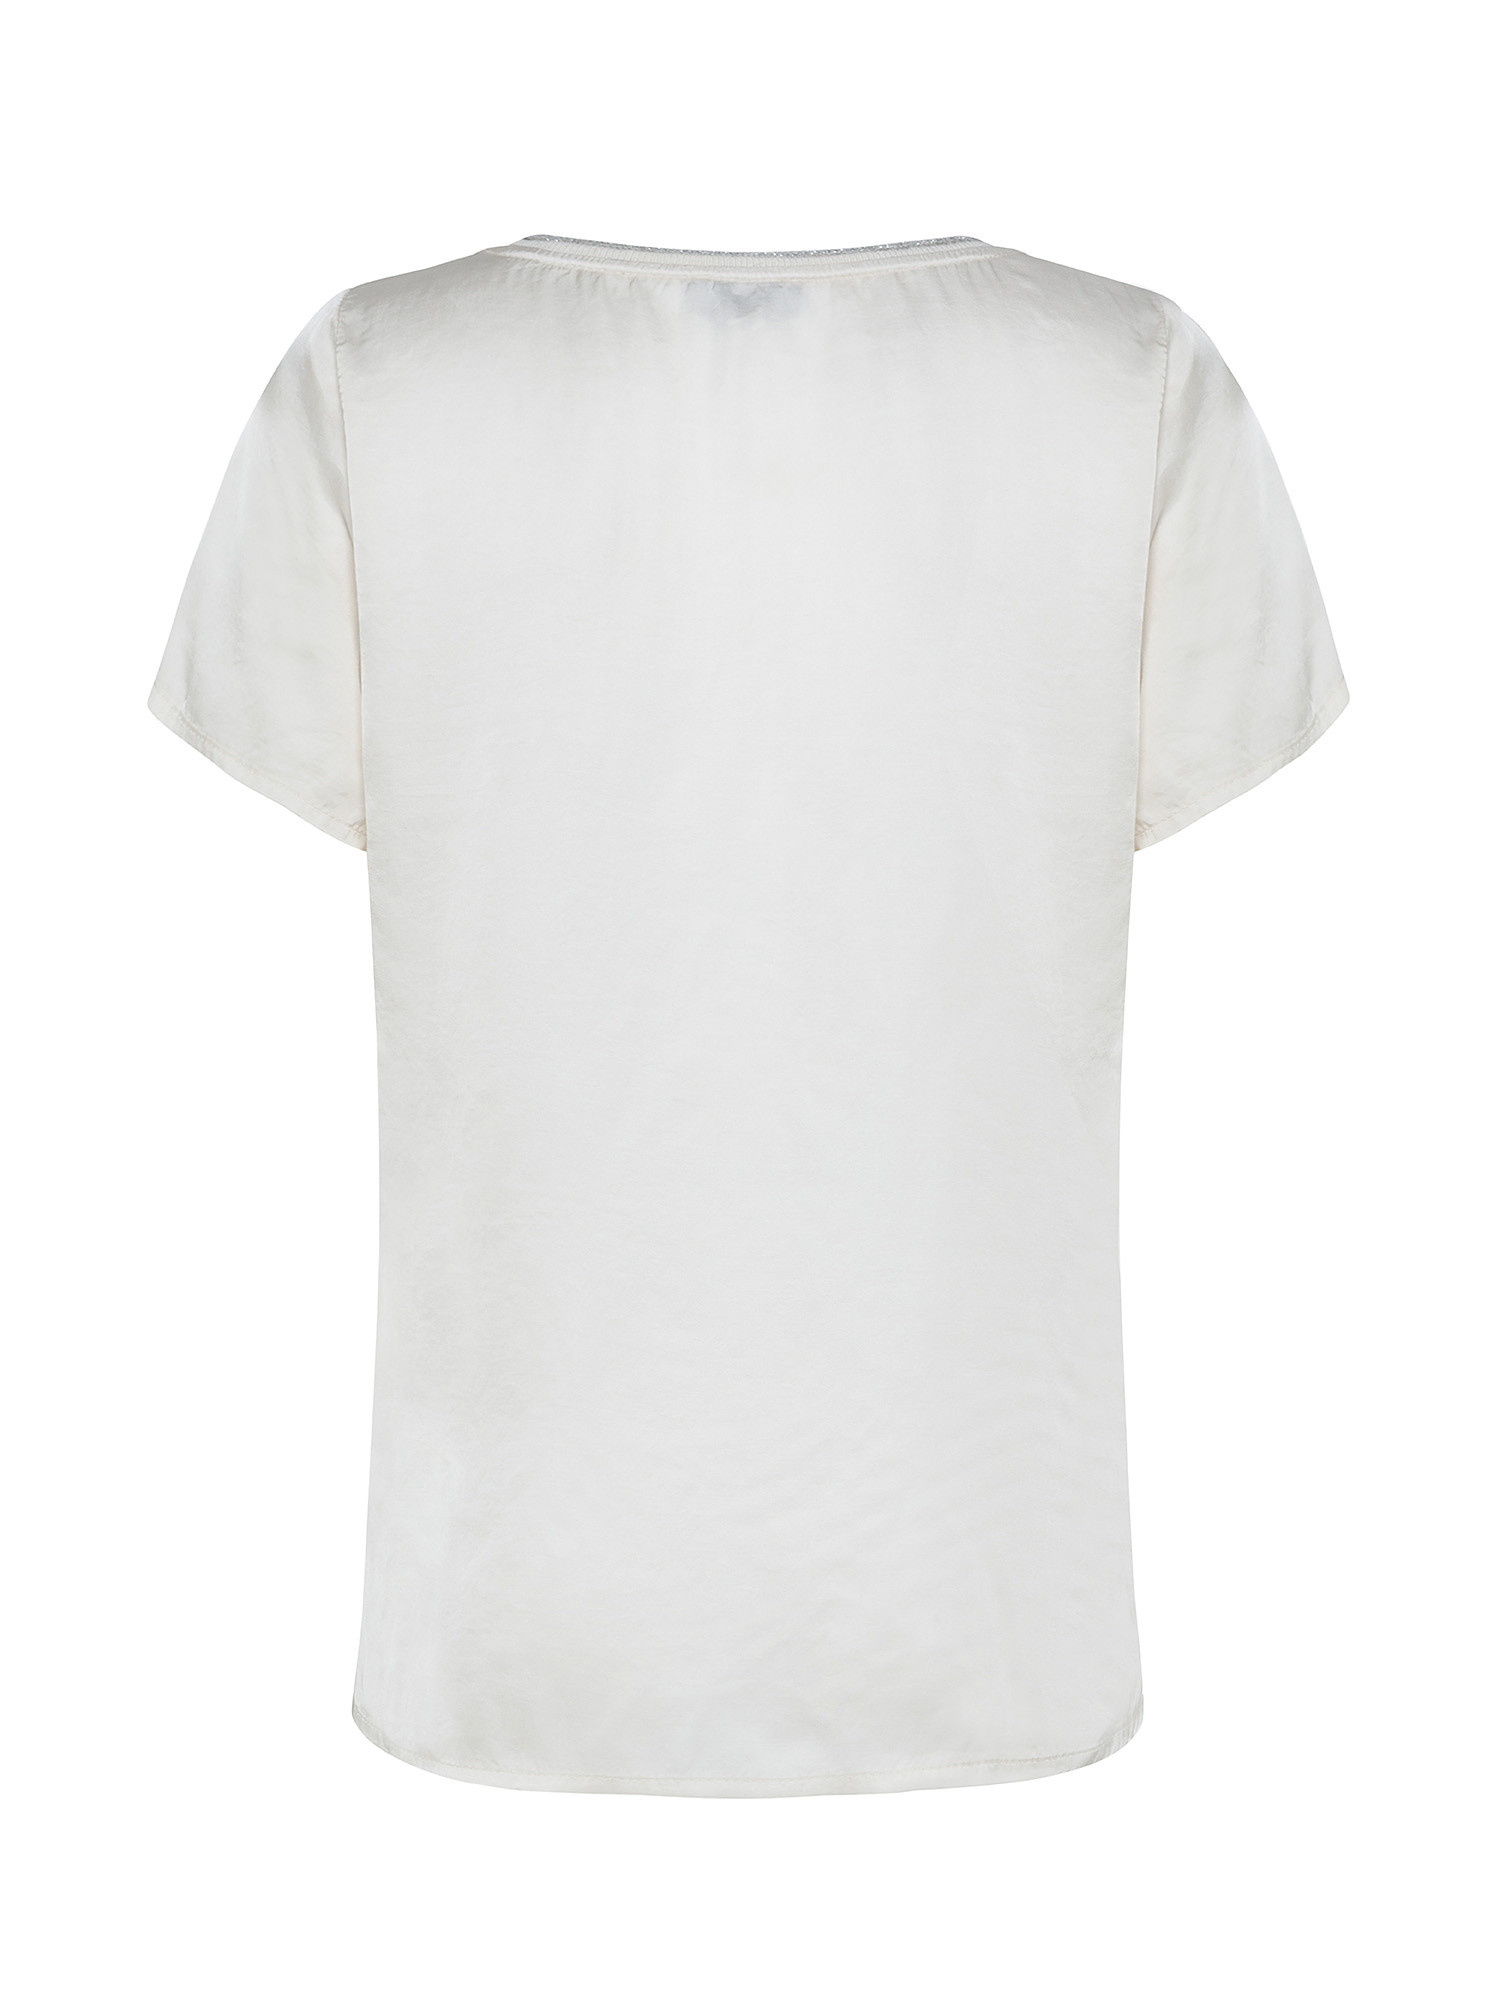 T-shirt con lurex, Bianco panna, large